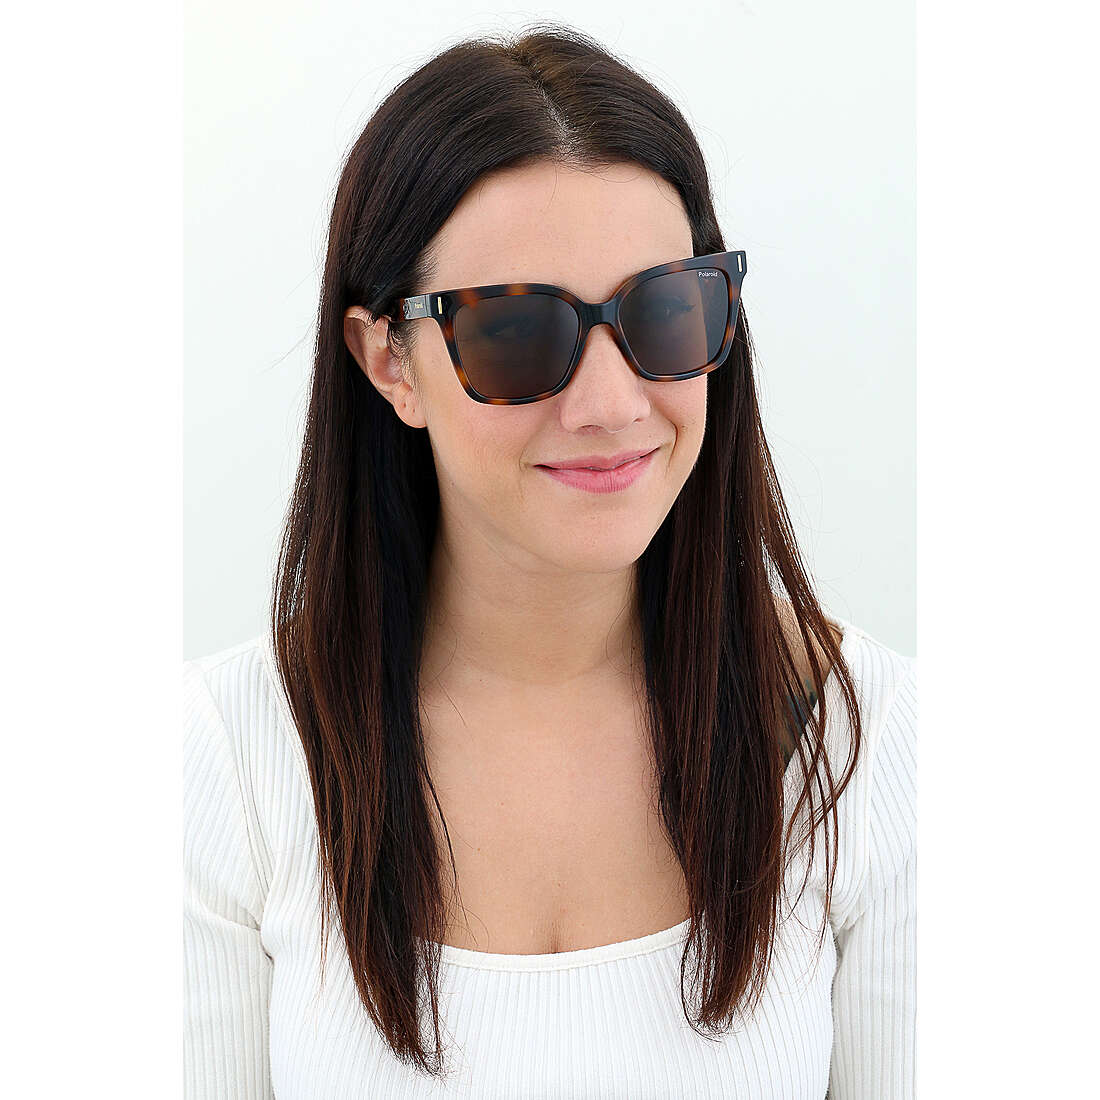 Polaroid occhiali da sole Cool donna 20568908654SP indosso